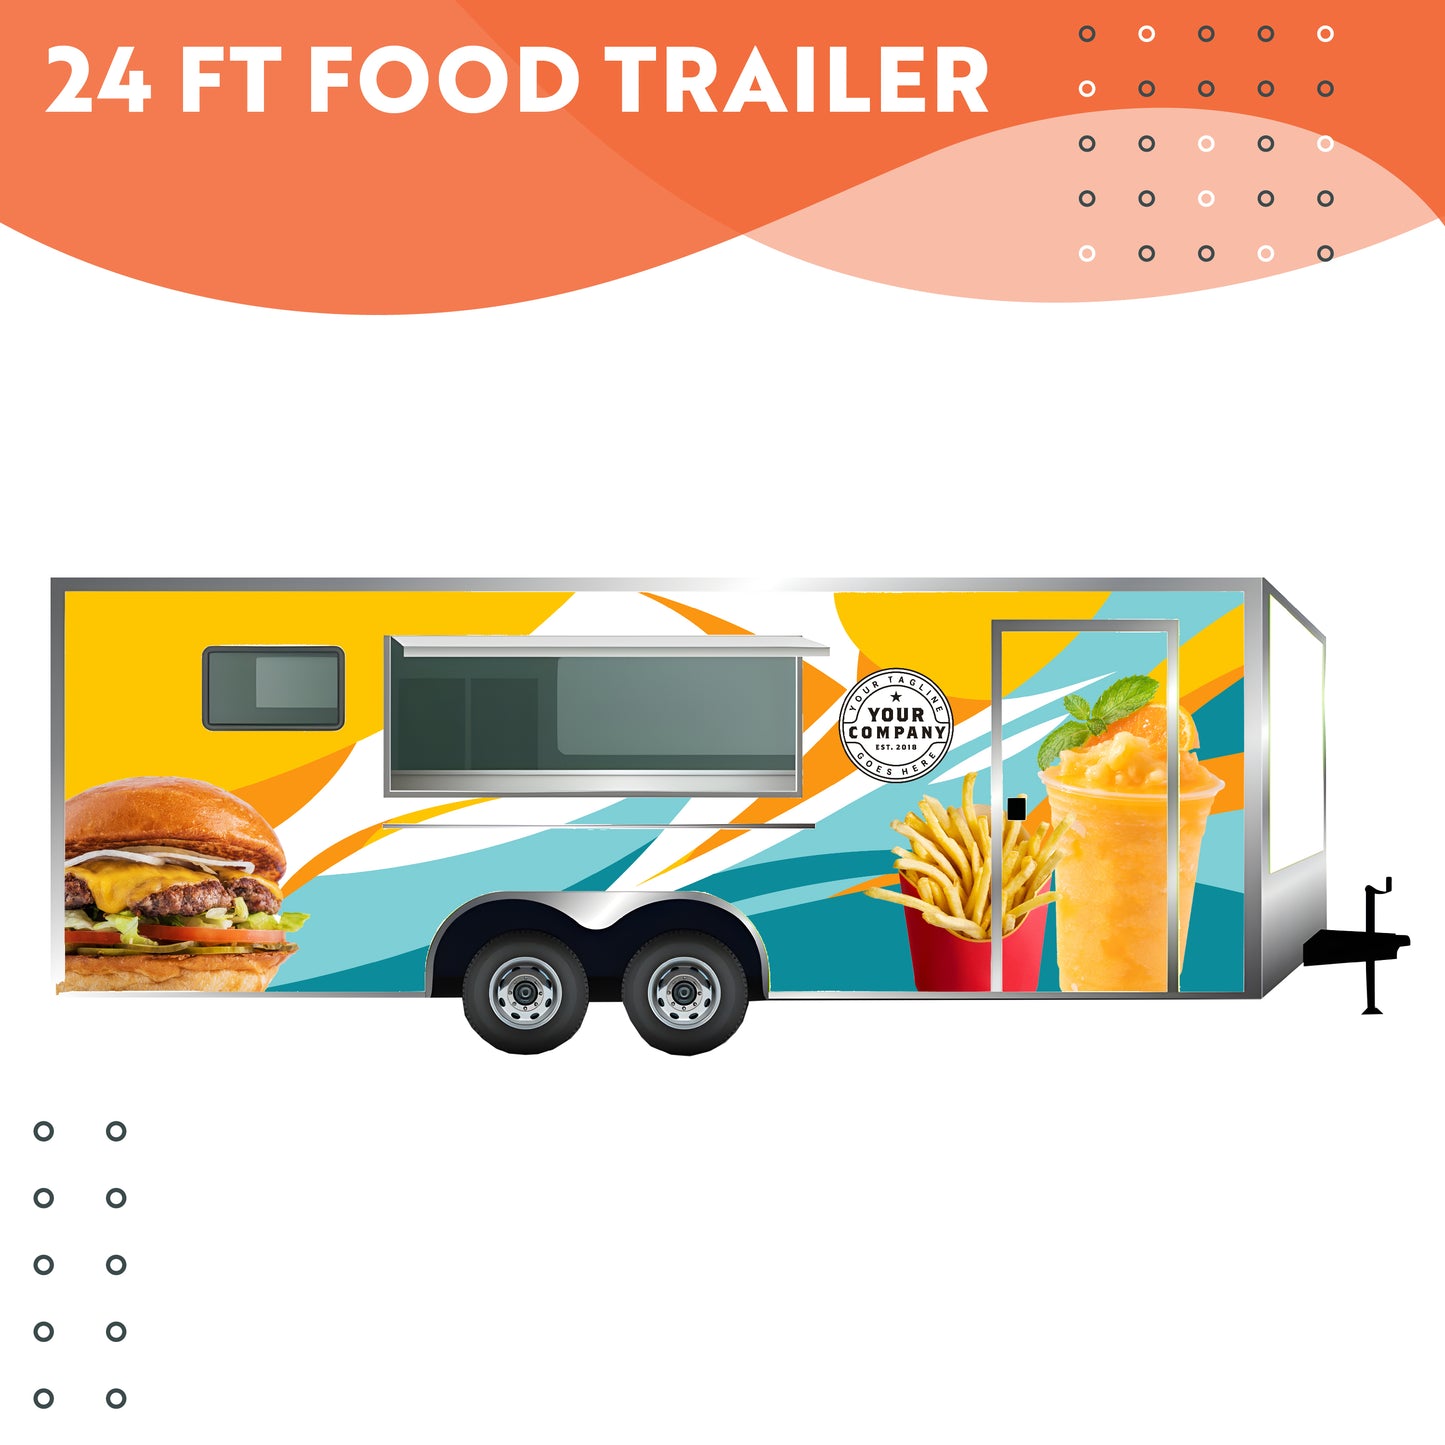 24 ft Food Trailer